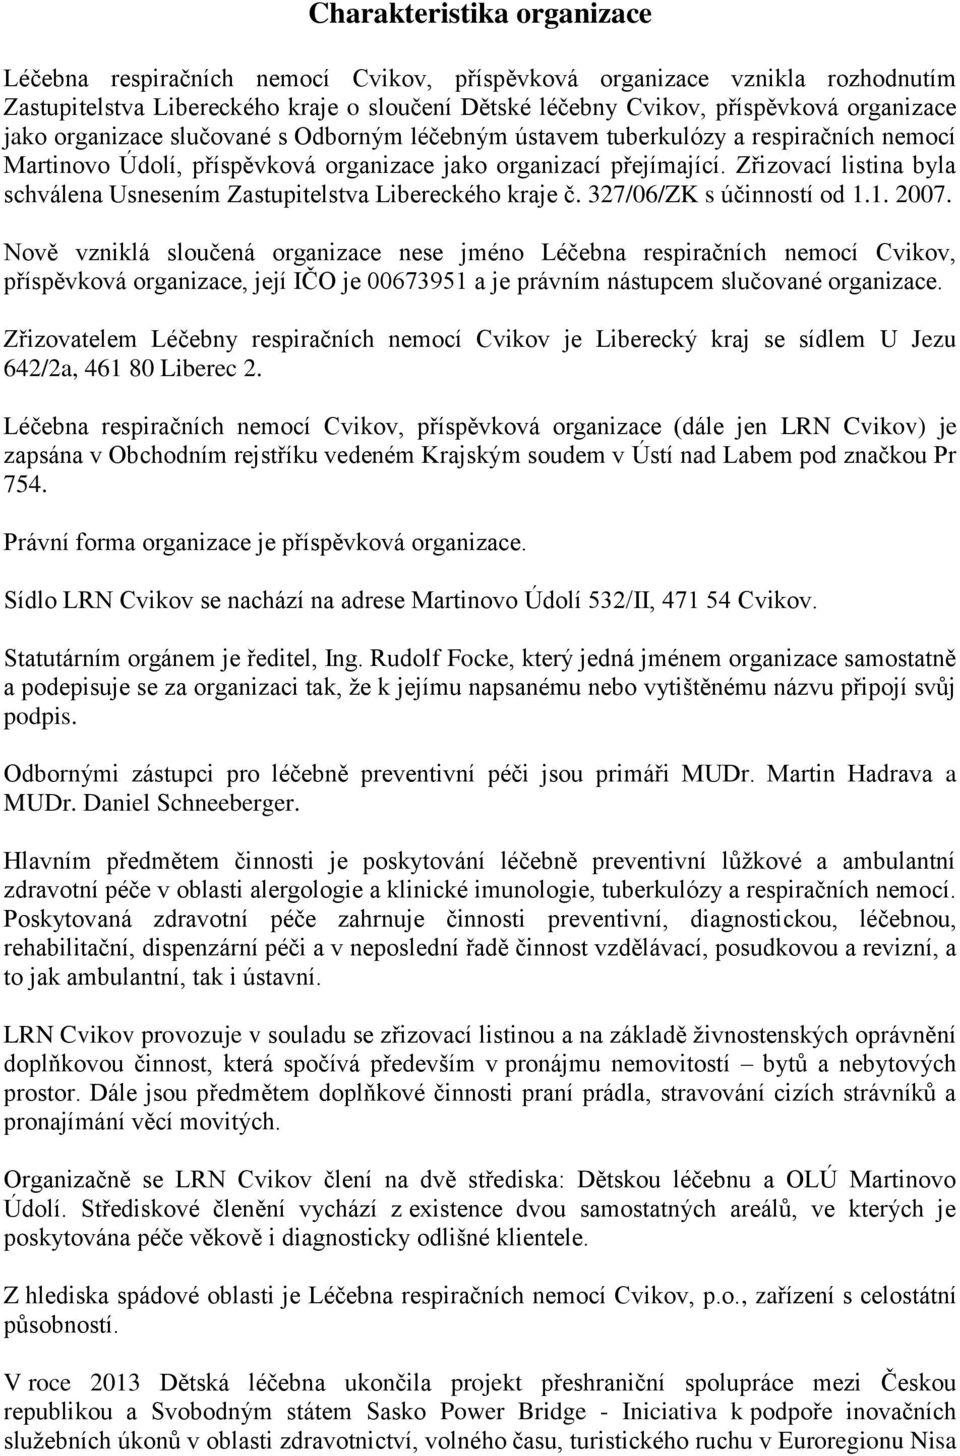 Zřizovací listina byla schválena Usnesením Zastupitelstva Libereckého kraje č. 327/06/ZK s účinností od 1.1. 2007.